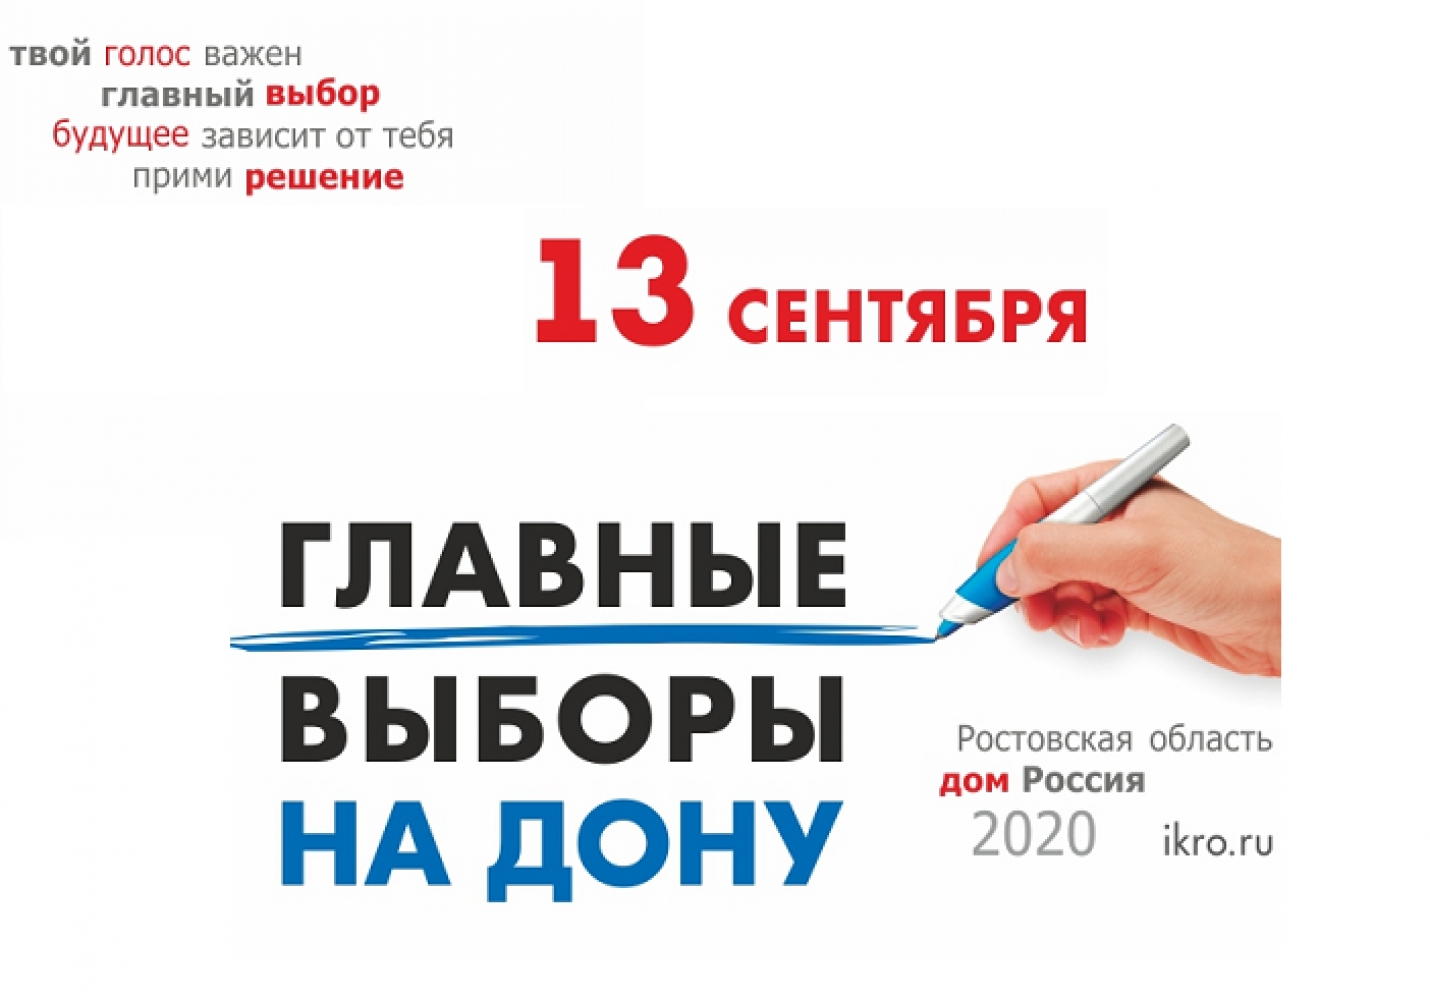 13 сентября 2020 года в Ростовской области состоятся выборы Губернатора